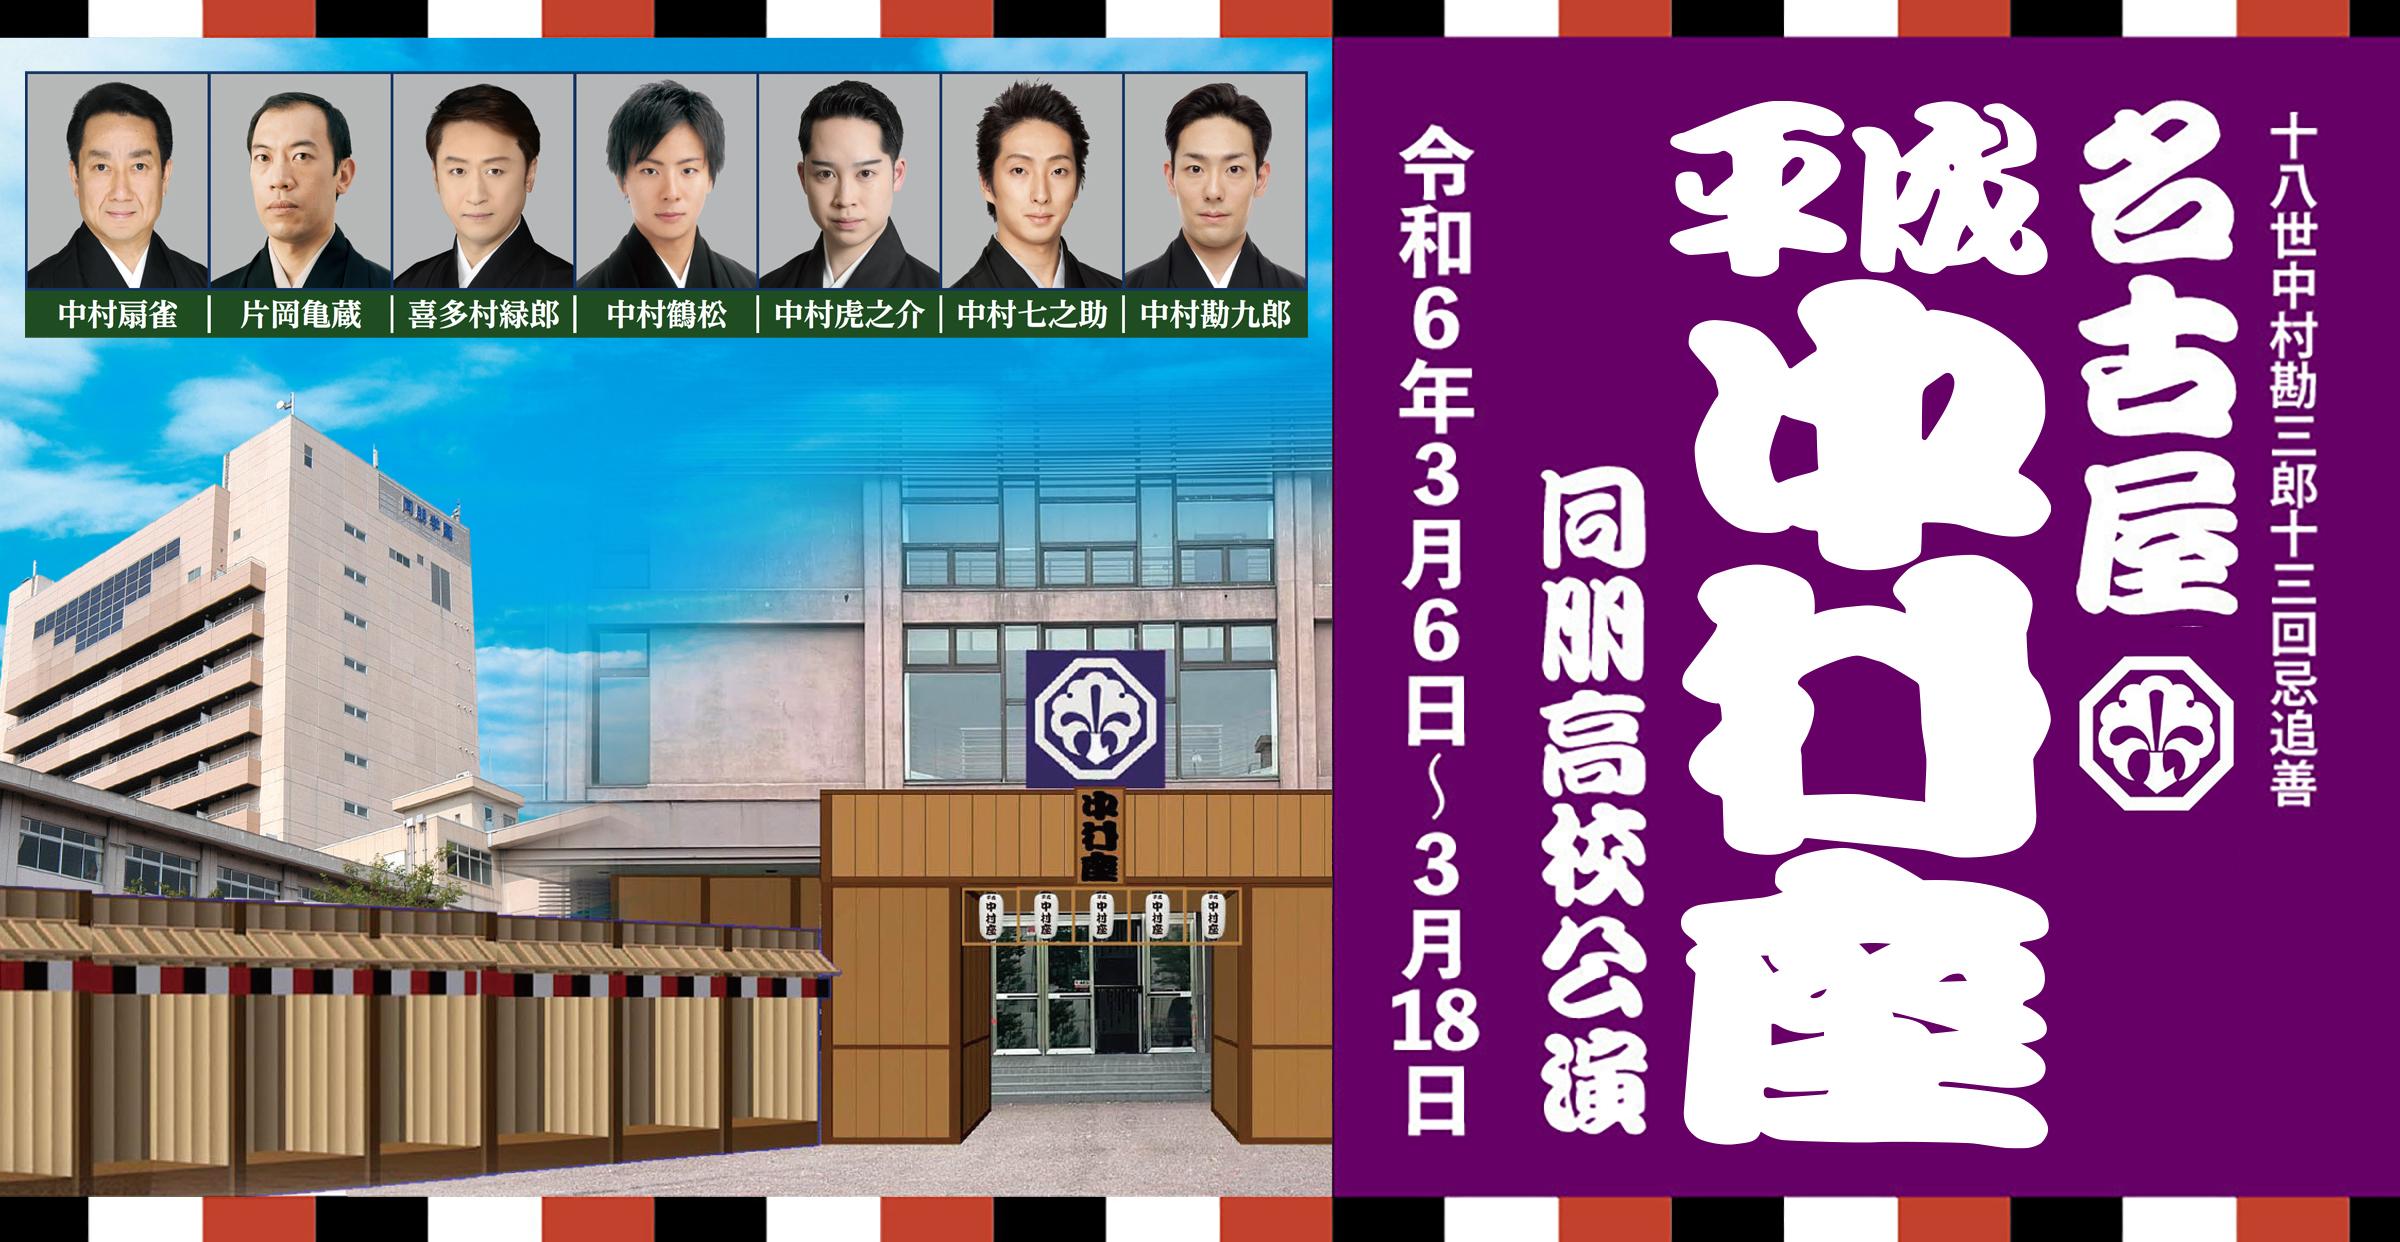 名古屋平成中村座 同朋高校公演 | イベントカレンダー | 東海テレビ